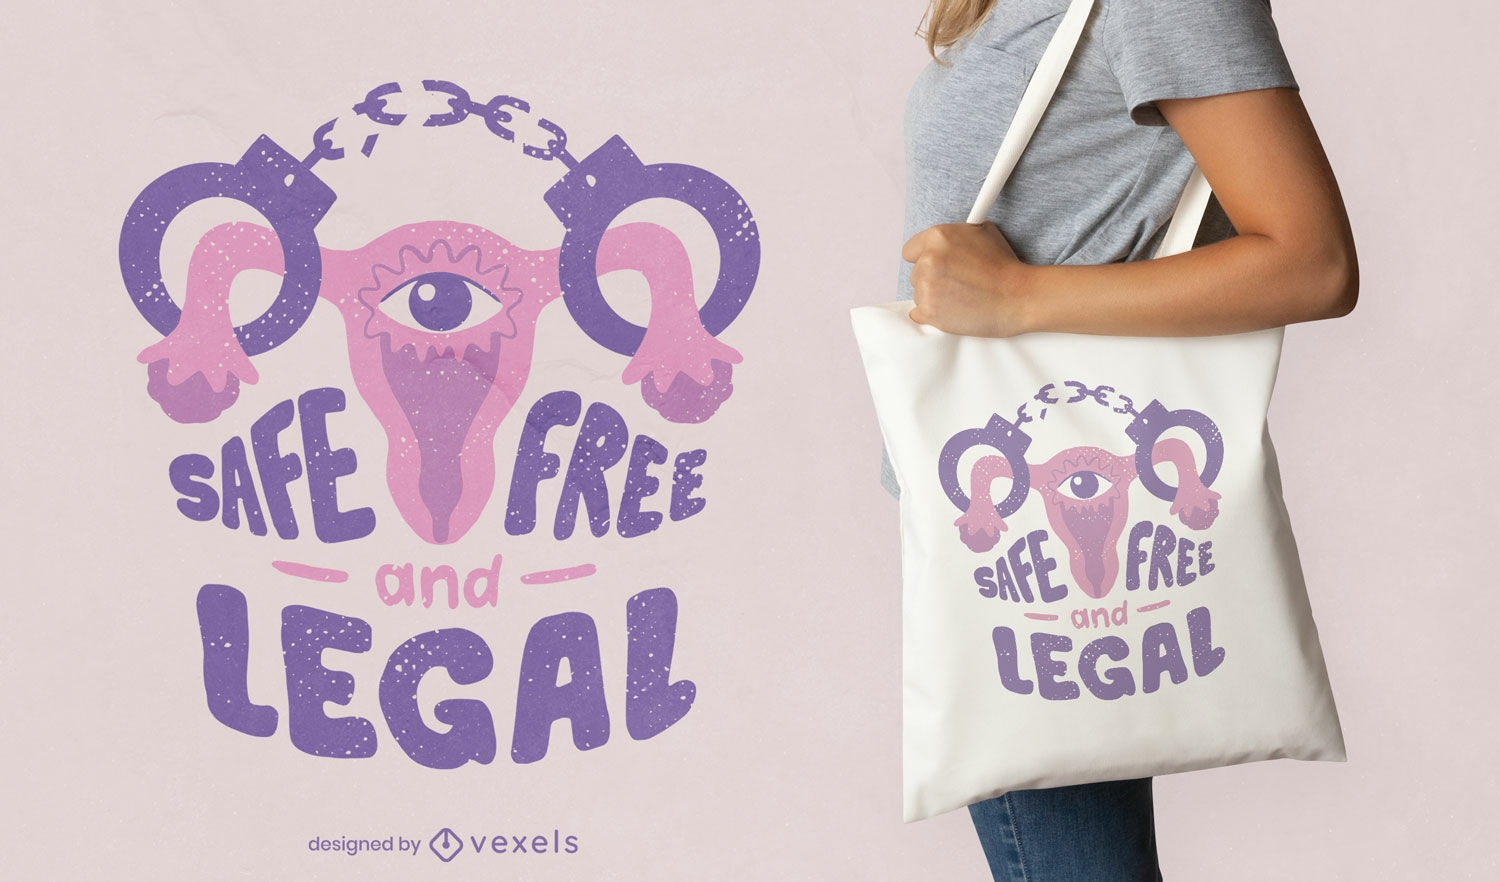 Uterus abortion quote tote bag design